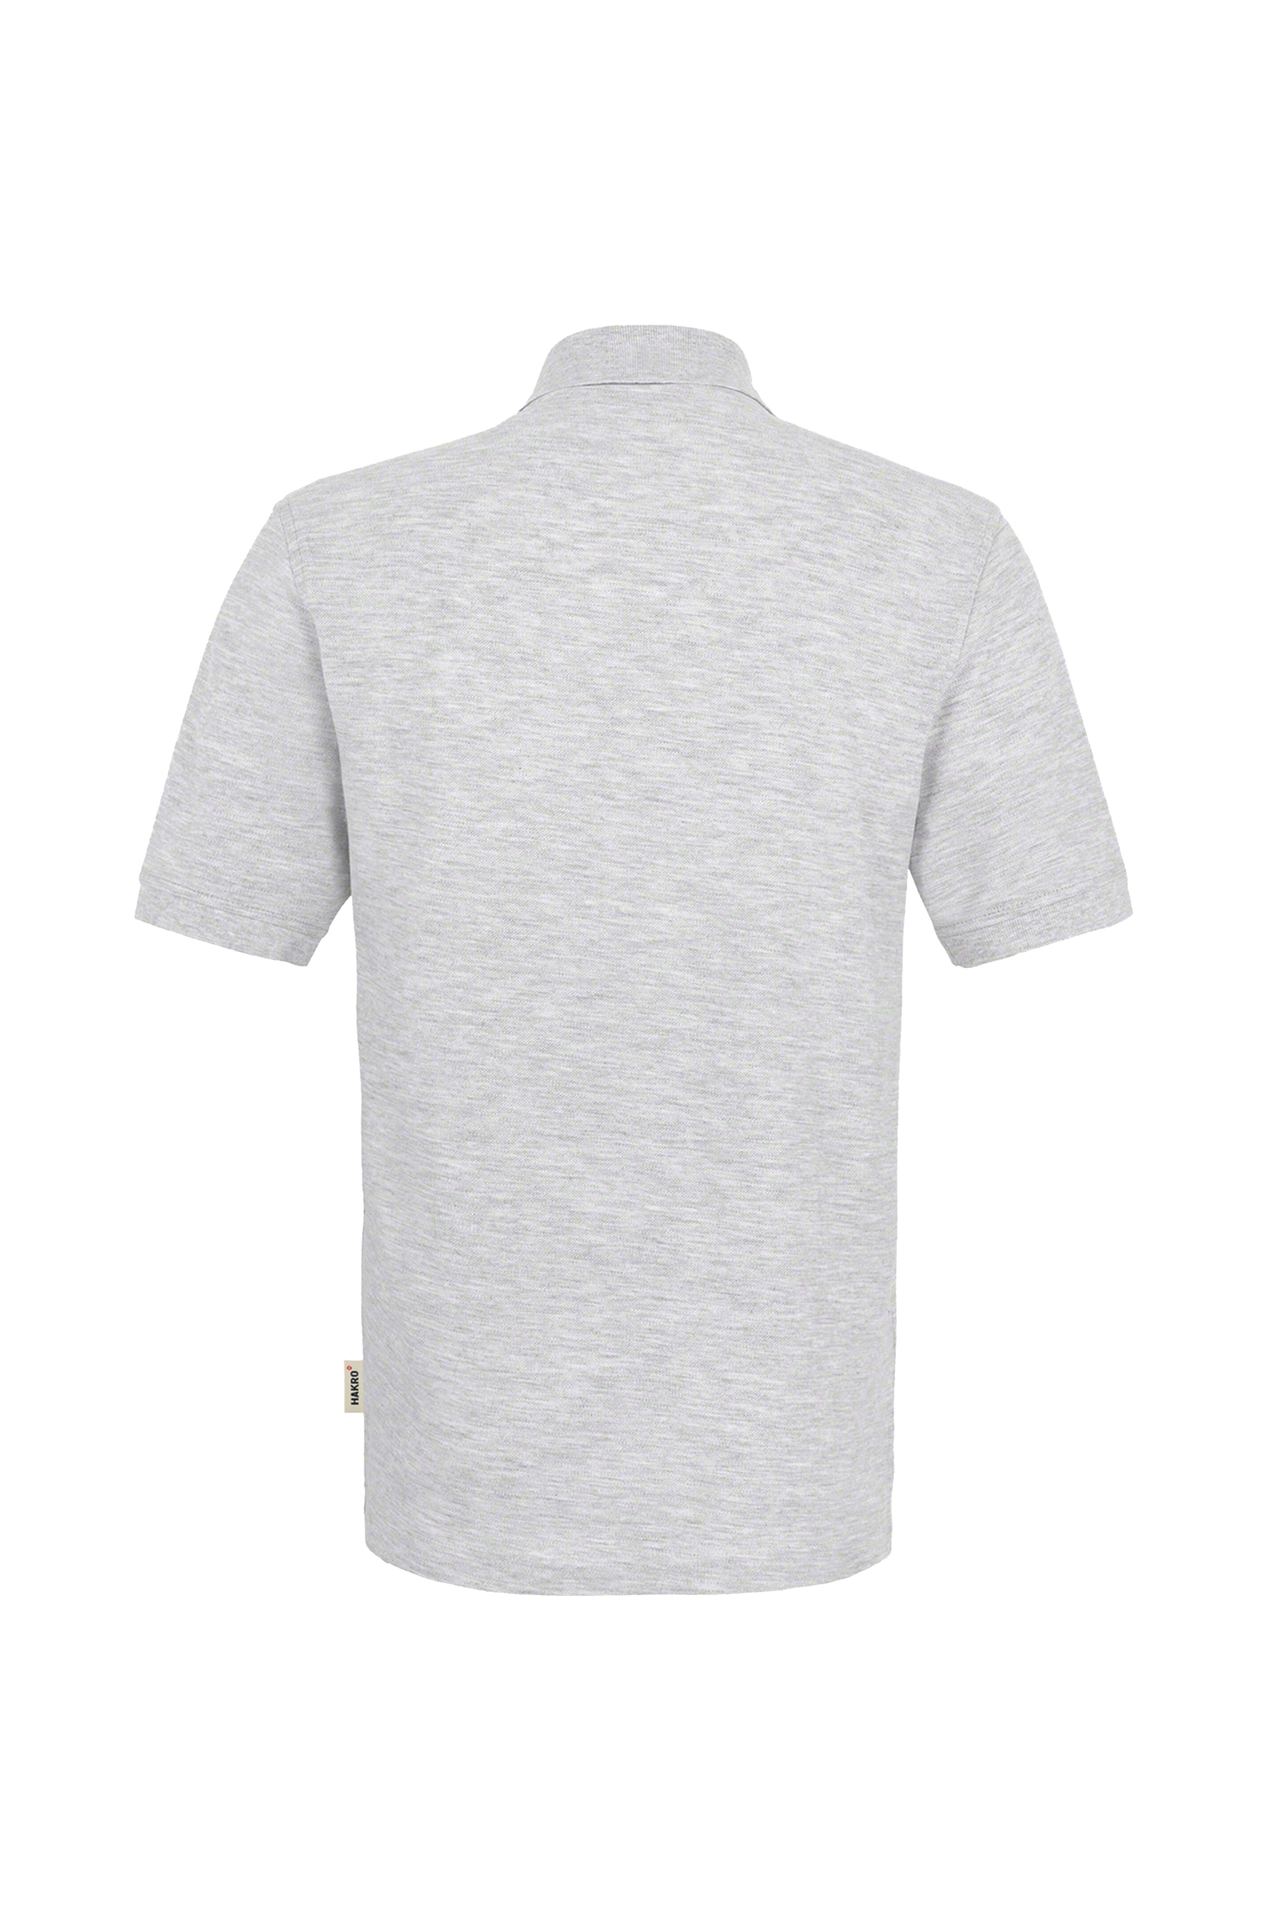 Polo-Piqué-Hemd, ash-meliert, Einstickung E+H